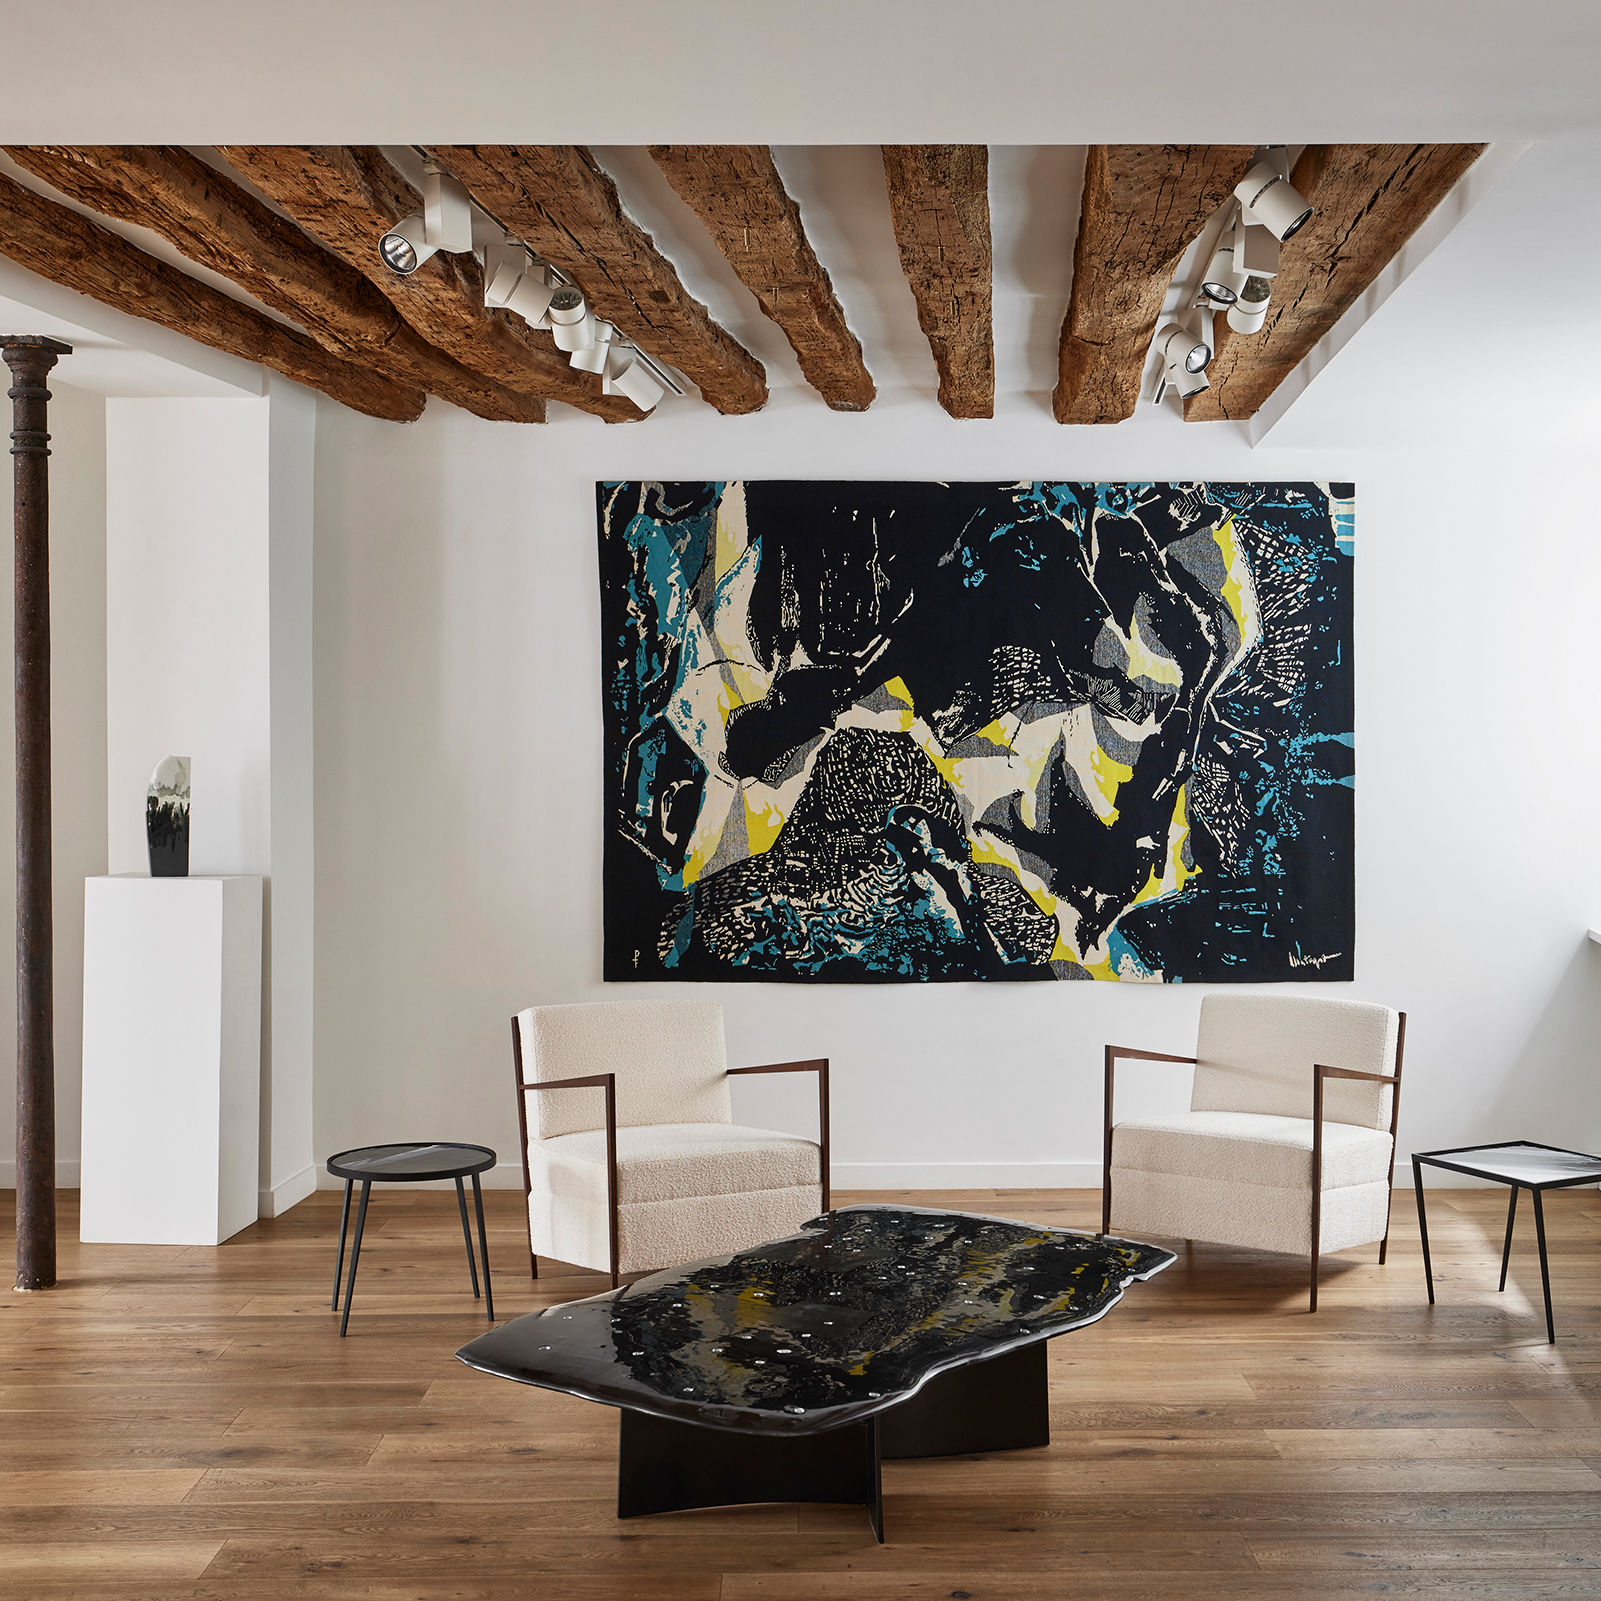 Unique Pieces - Galerie Negropontes